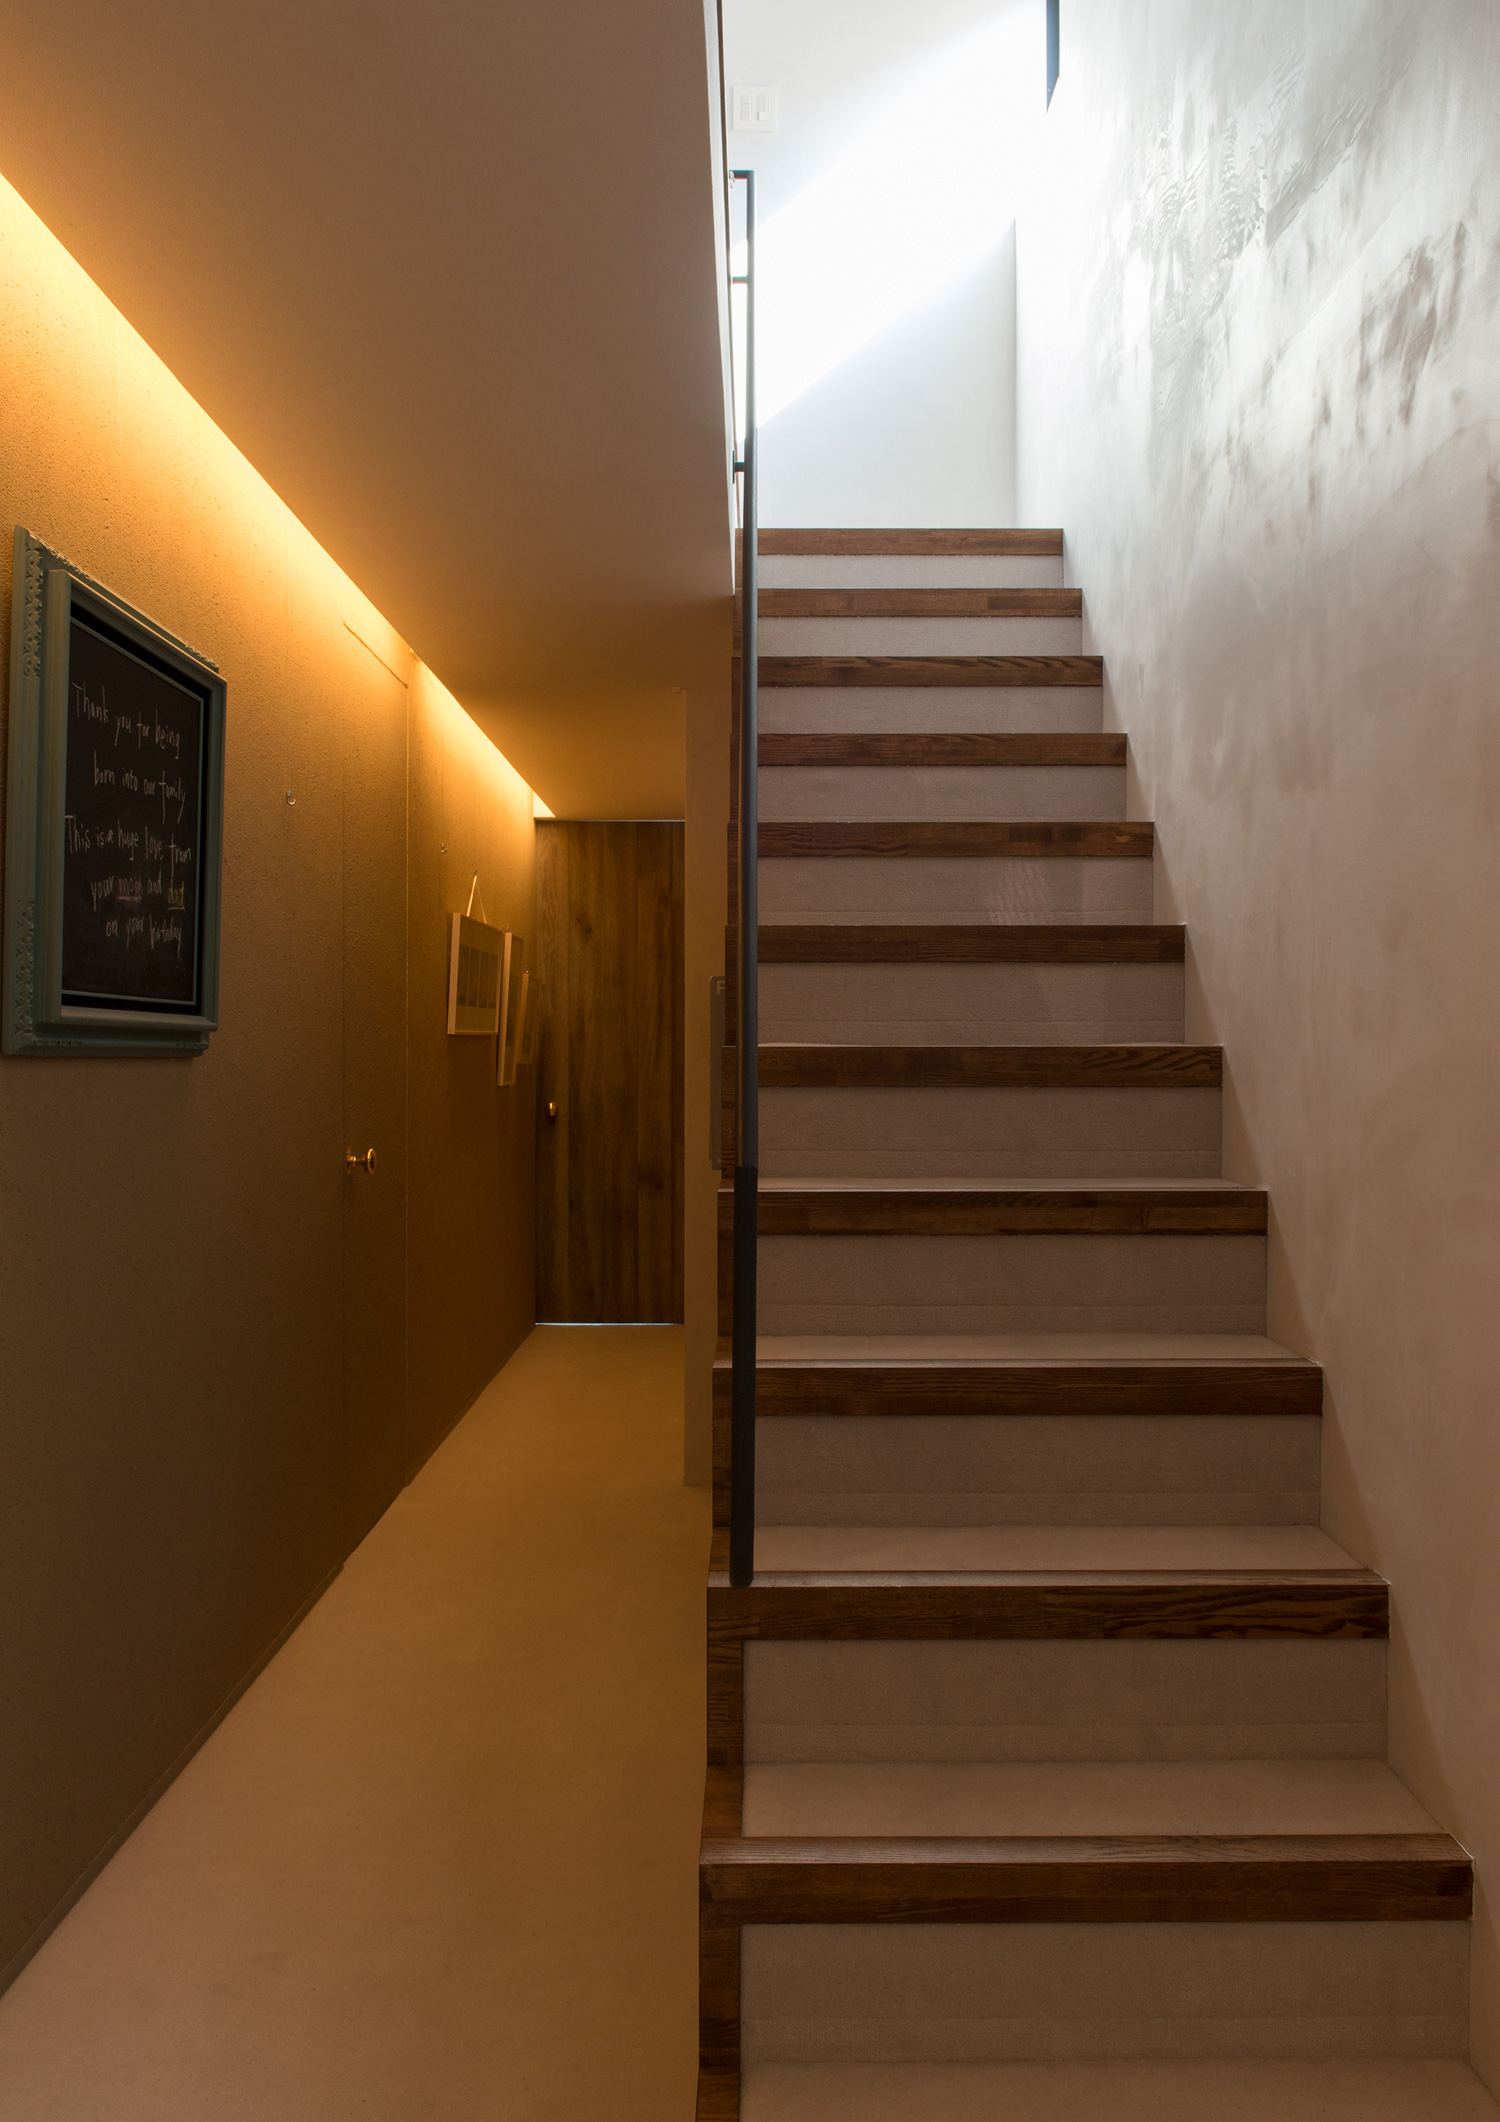 壁際に照明が取り付けられた廊下の横にある階段・デザイン住宅